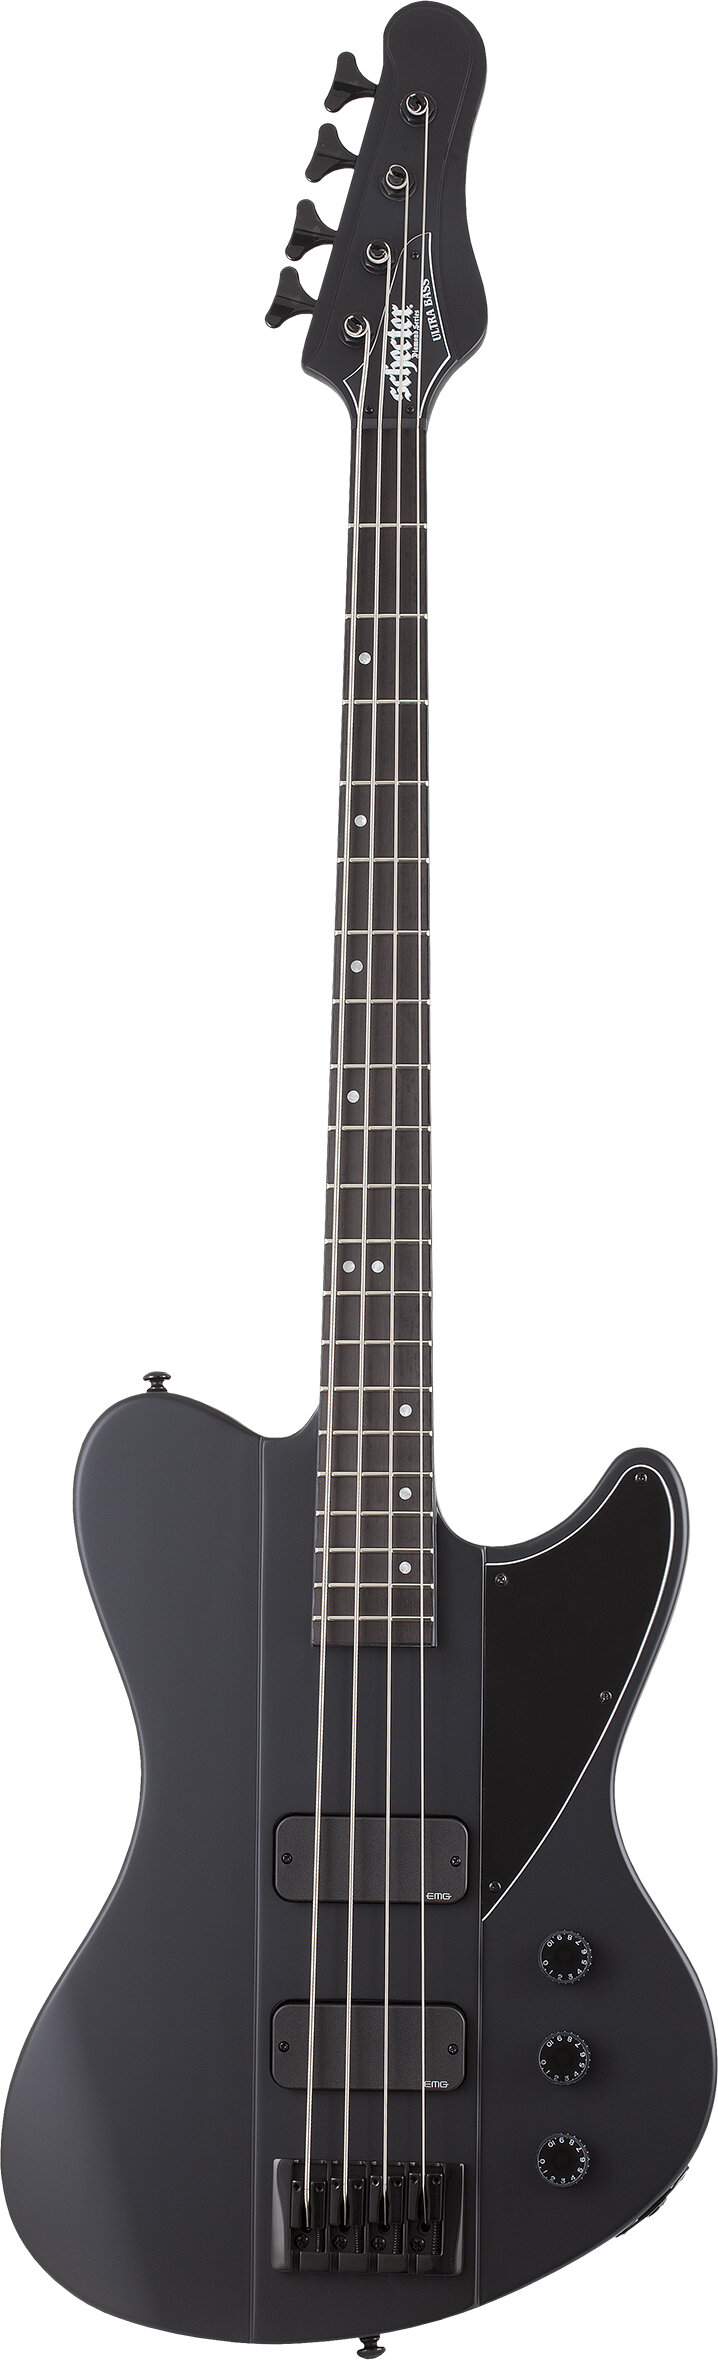 Schecter Ultra Bass Guitar Satin Black -  2125